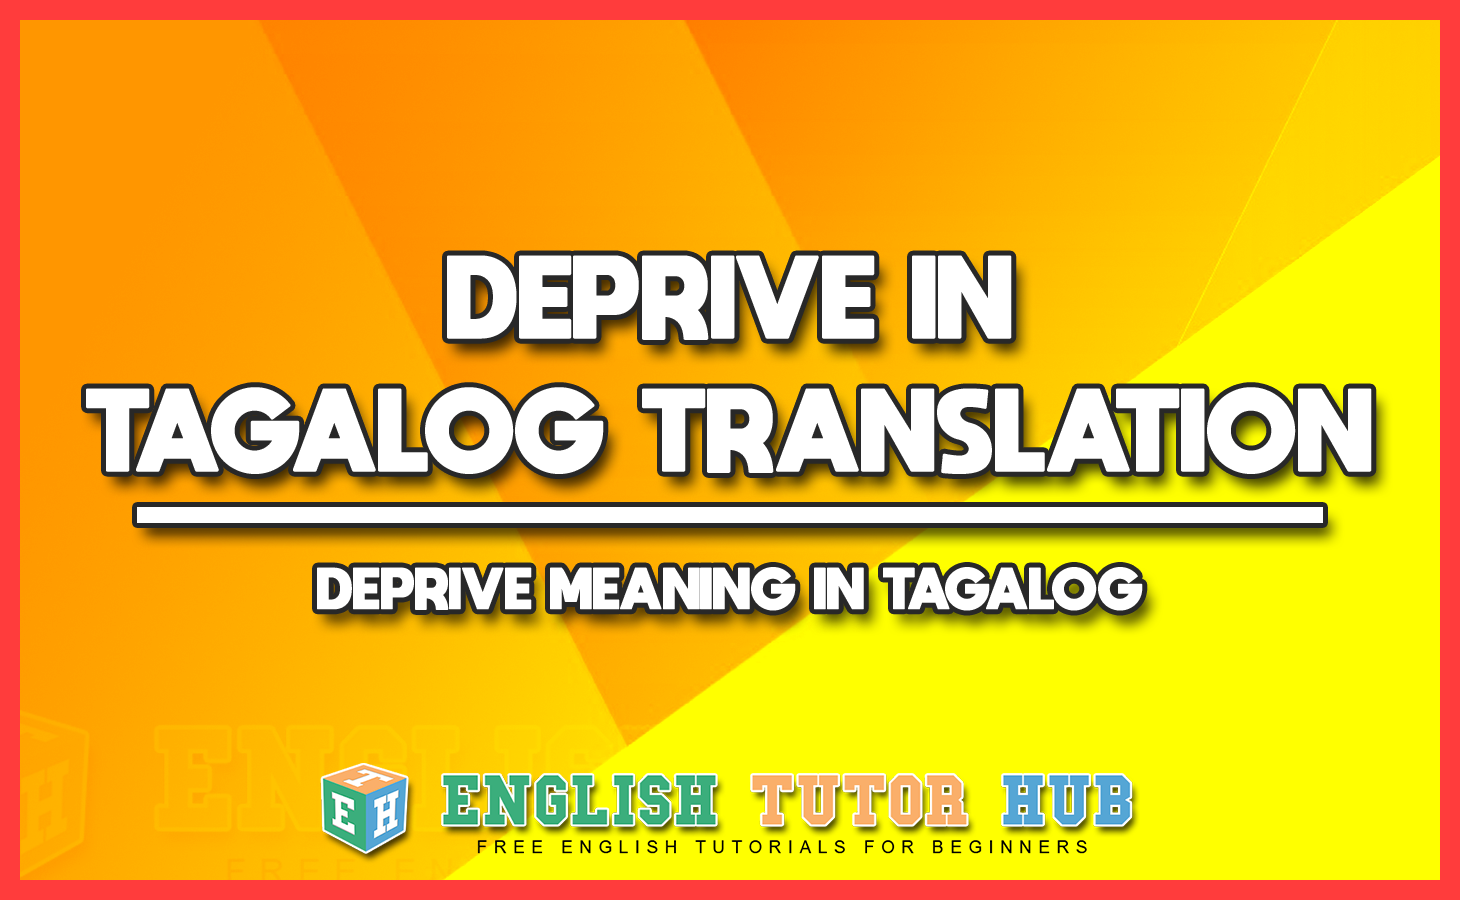 DEPRIVE IN TAGALOG TRANSLATION - DEPRIVE MEANING IN TAGALOG